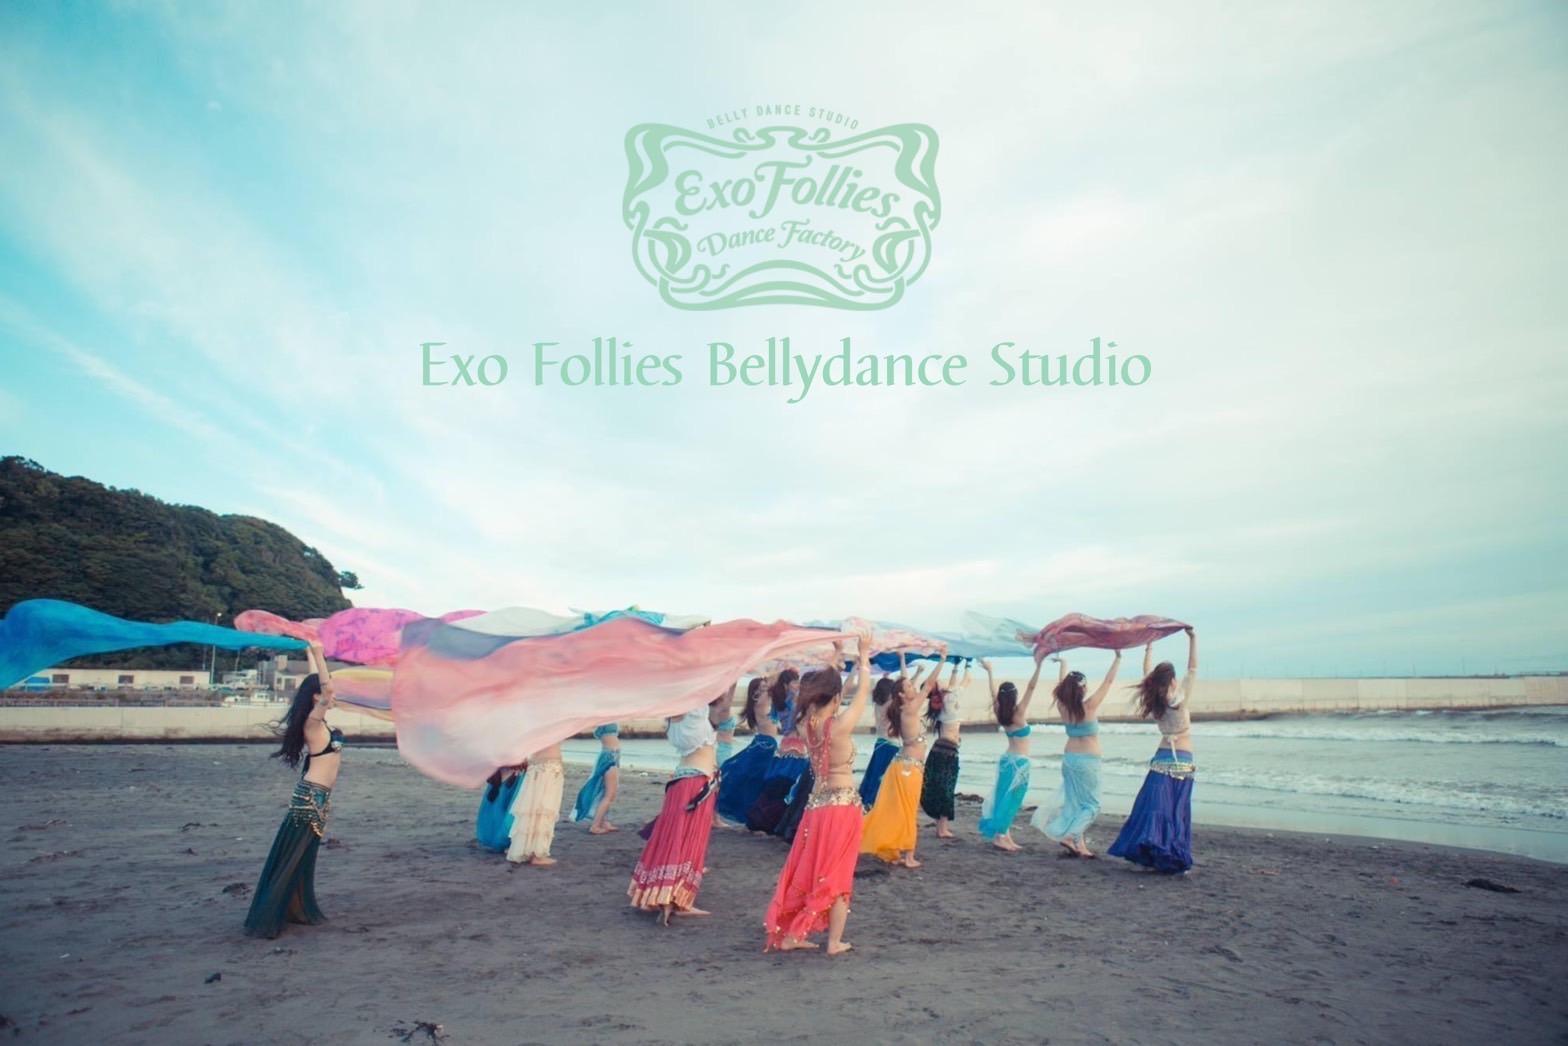 Exo Follies Bellydance Studio